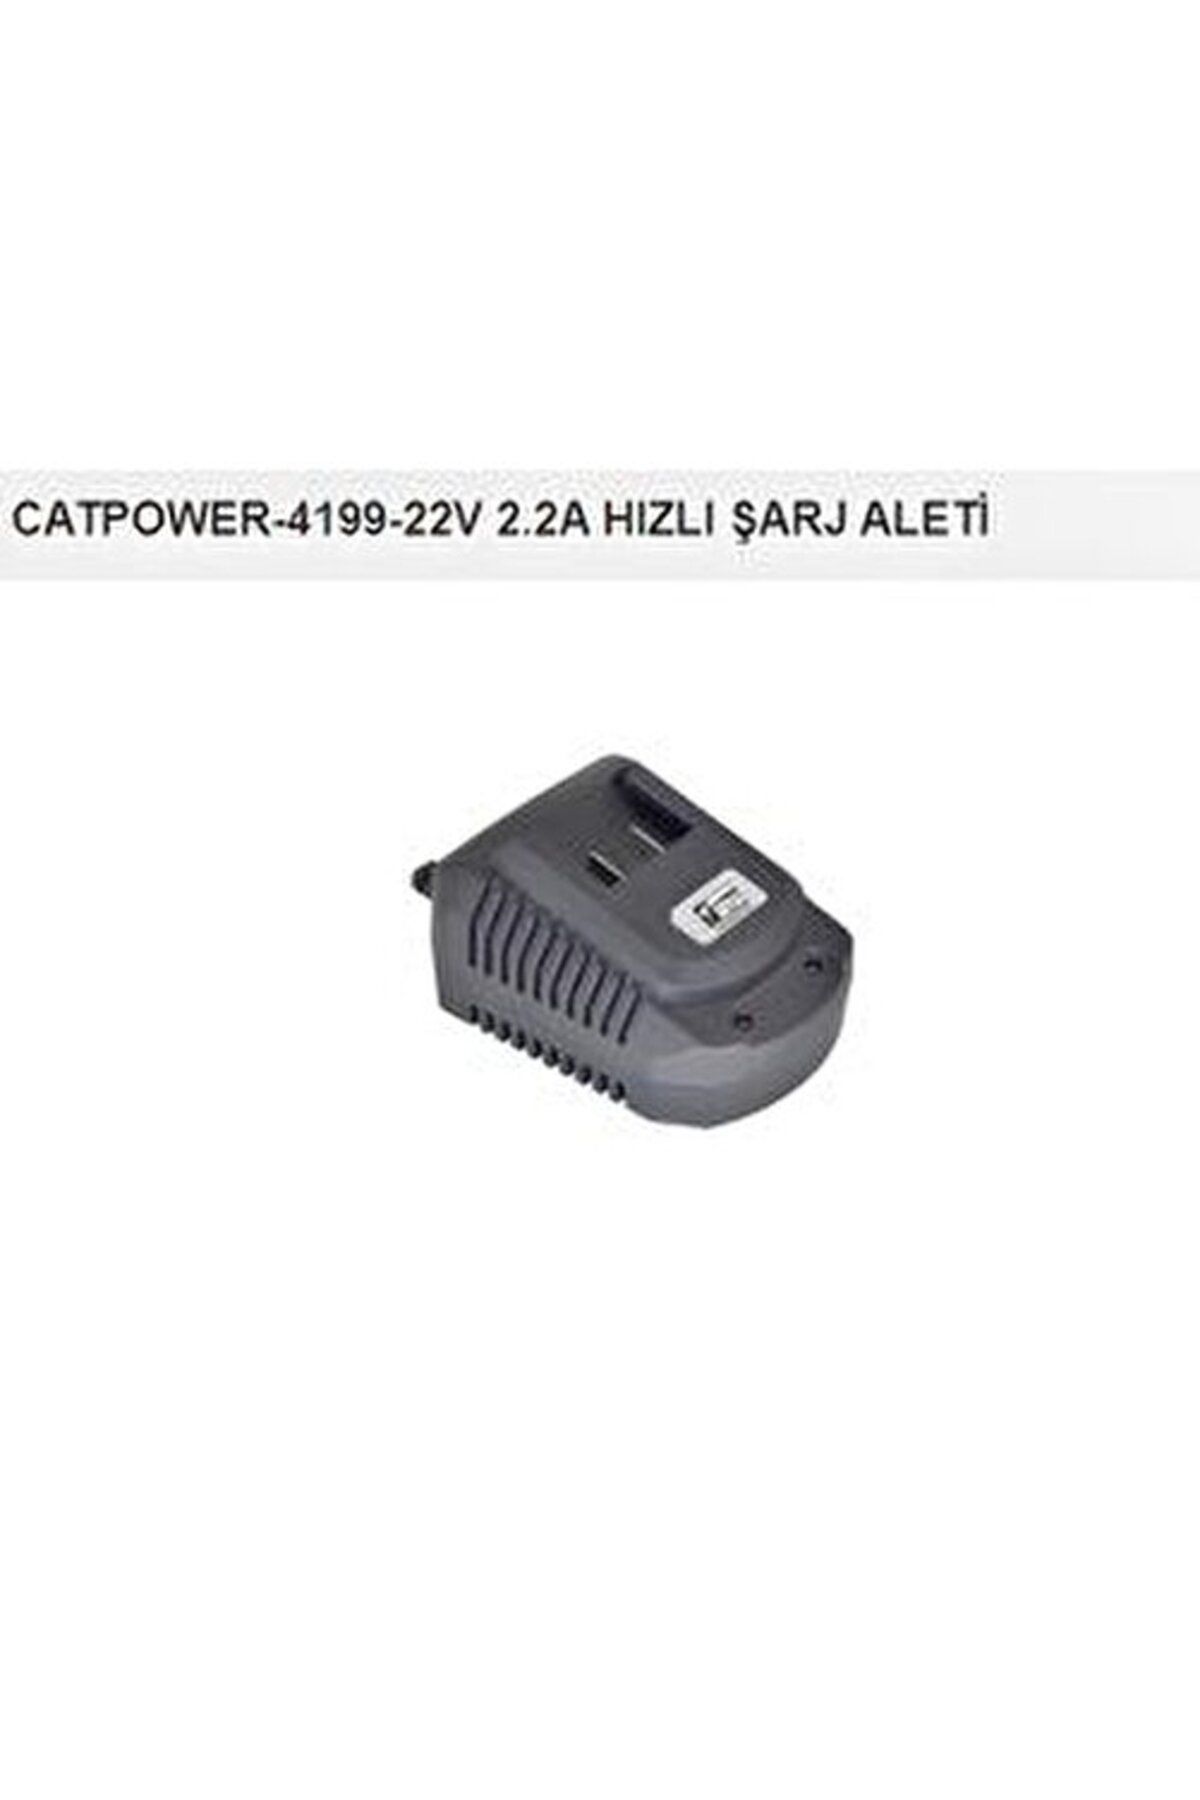 catpowertools CATPOWER HIZLI ŞARJ ALETİ 2,2A 22V UYUMLU CAT4199